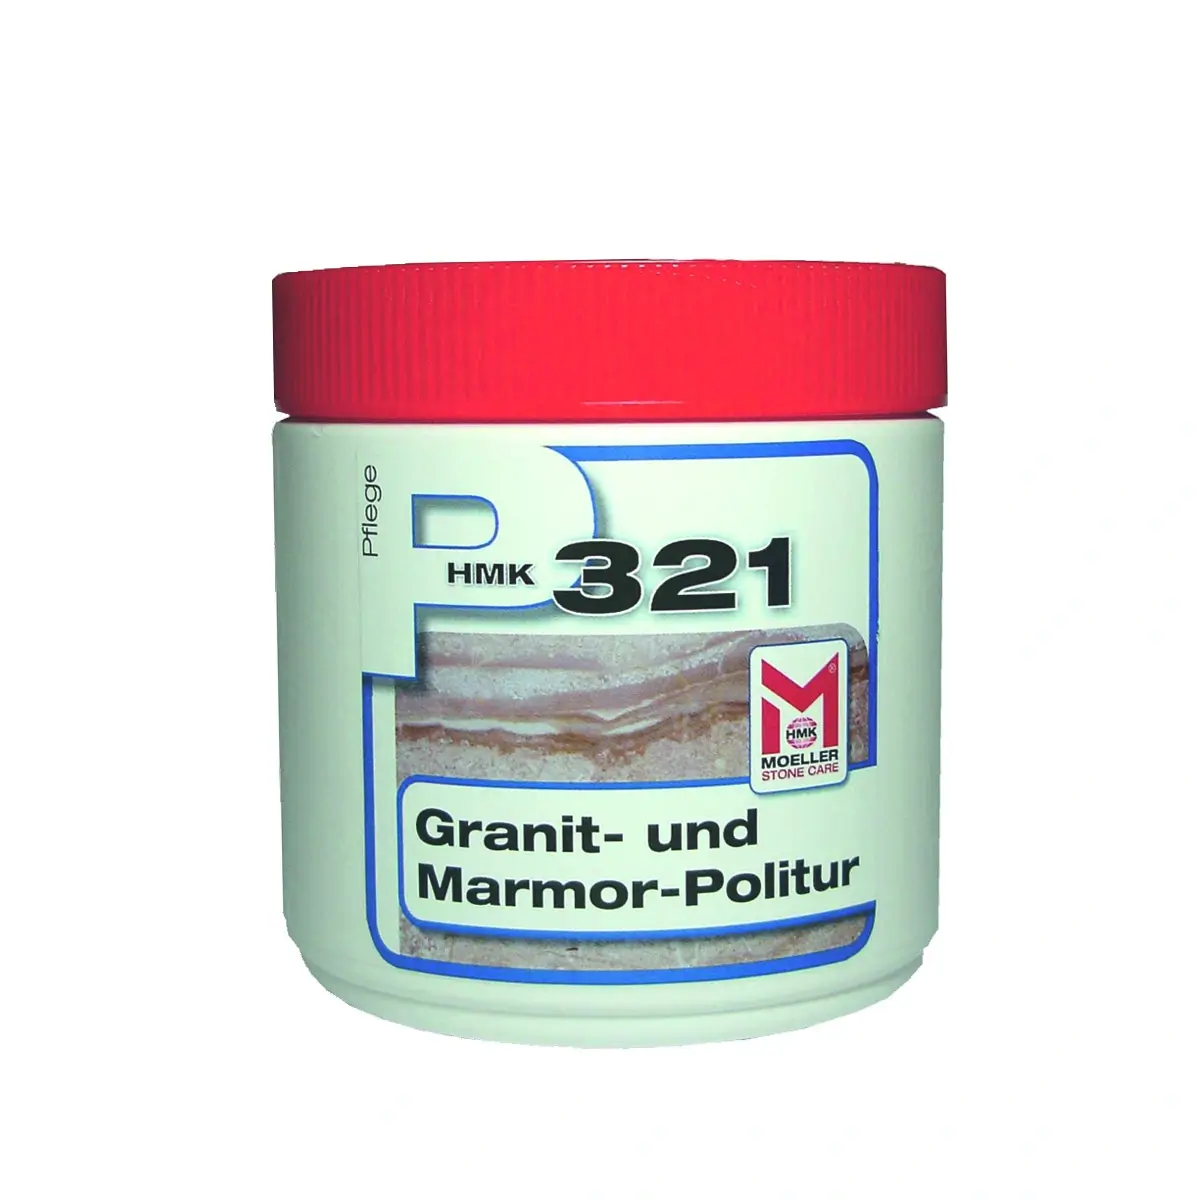 HMK P321 Granitpolitur & Marmorpolitur